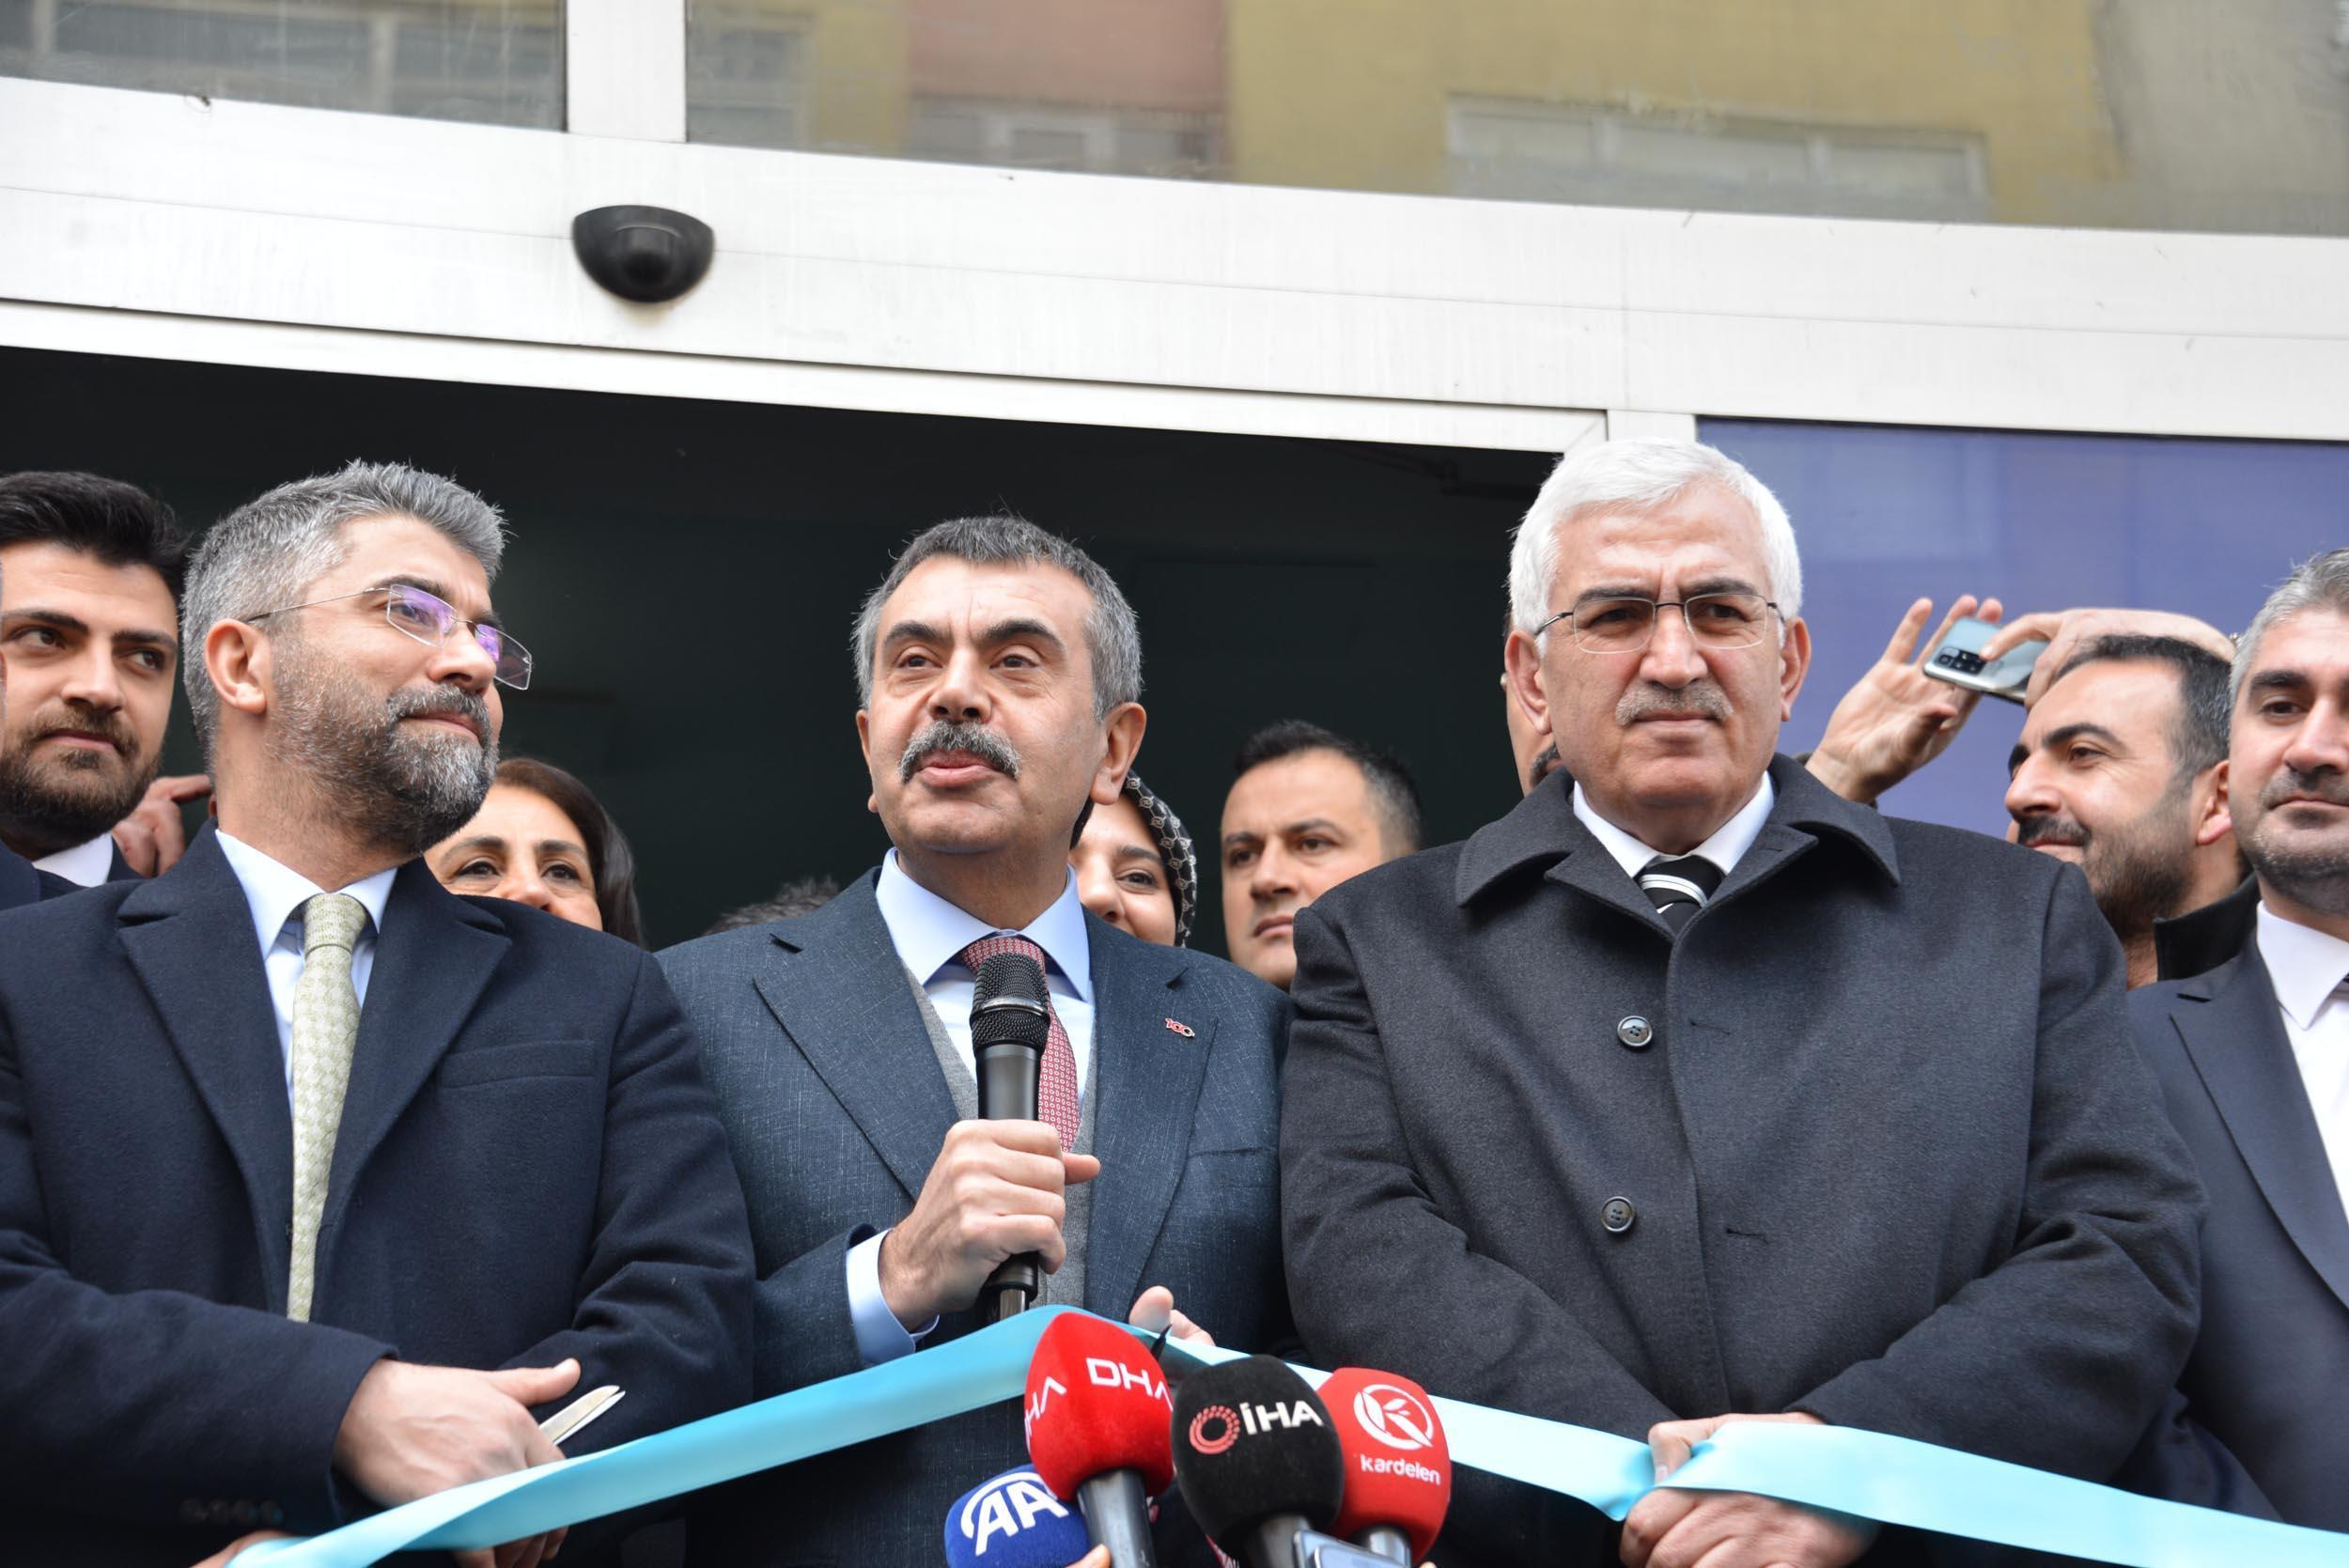 Milli Eğitim Bakanı Tekin: Cumhur İttifakı, Türkiye'nin bekası üzerine kuruldu